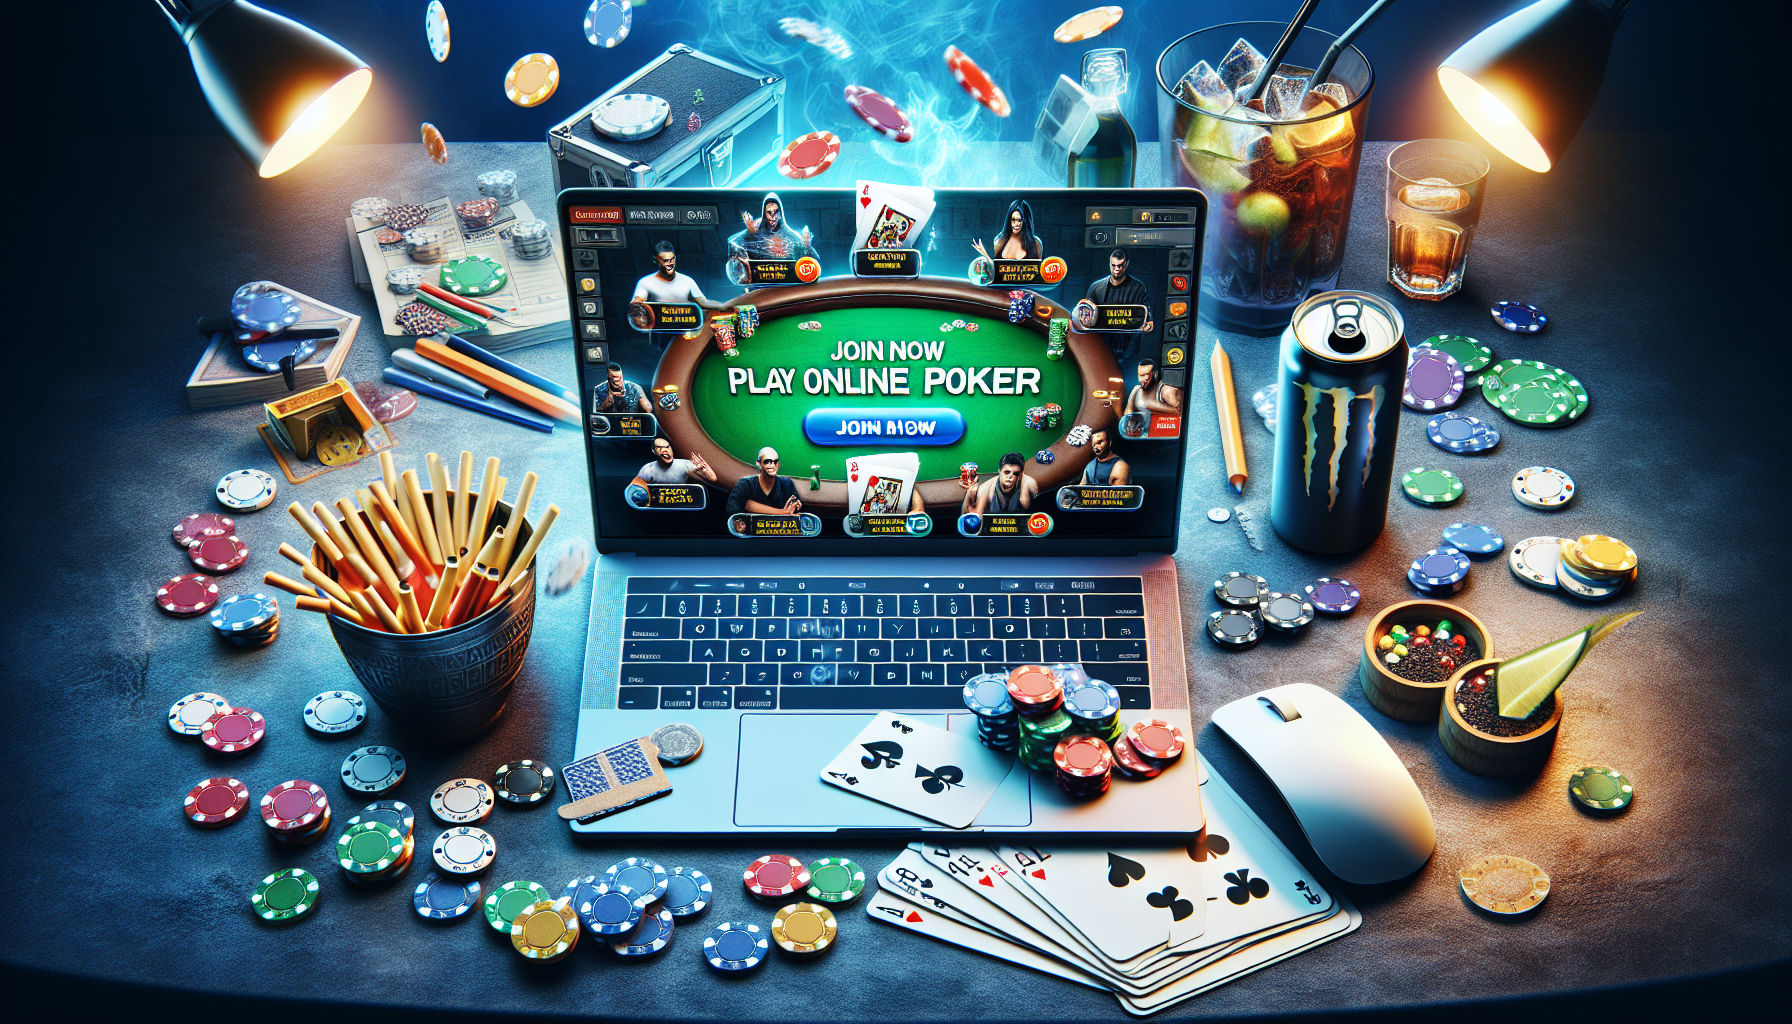 découvrez les meilleurs sites de poker en ligne pour jouer et gagner de l'argent. profitez des tournois de poker et des promotions exclusives sur ces sites de qualité.